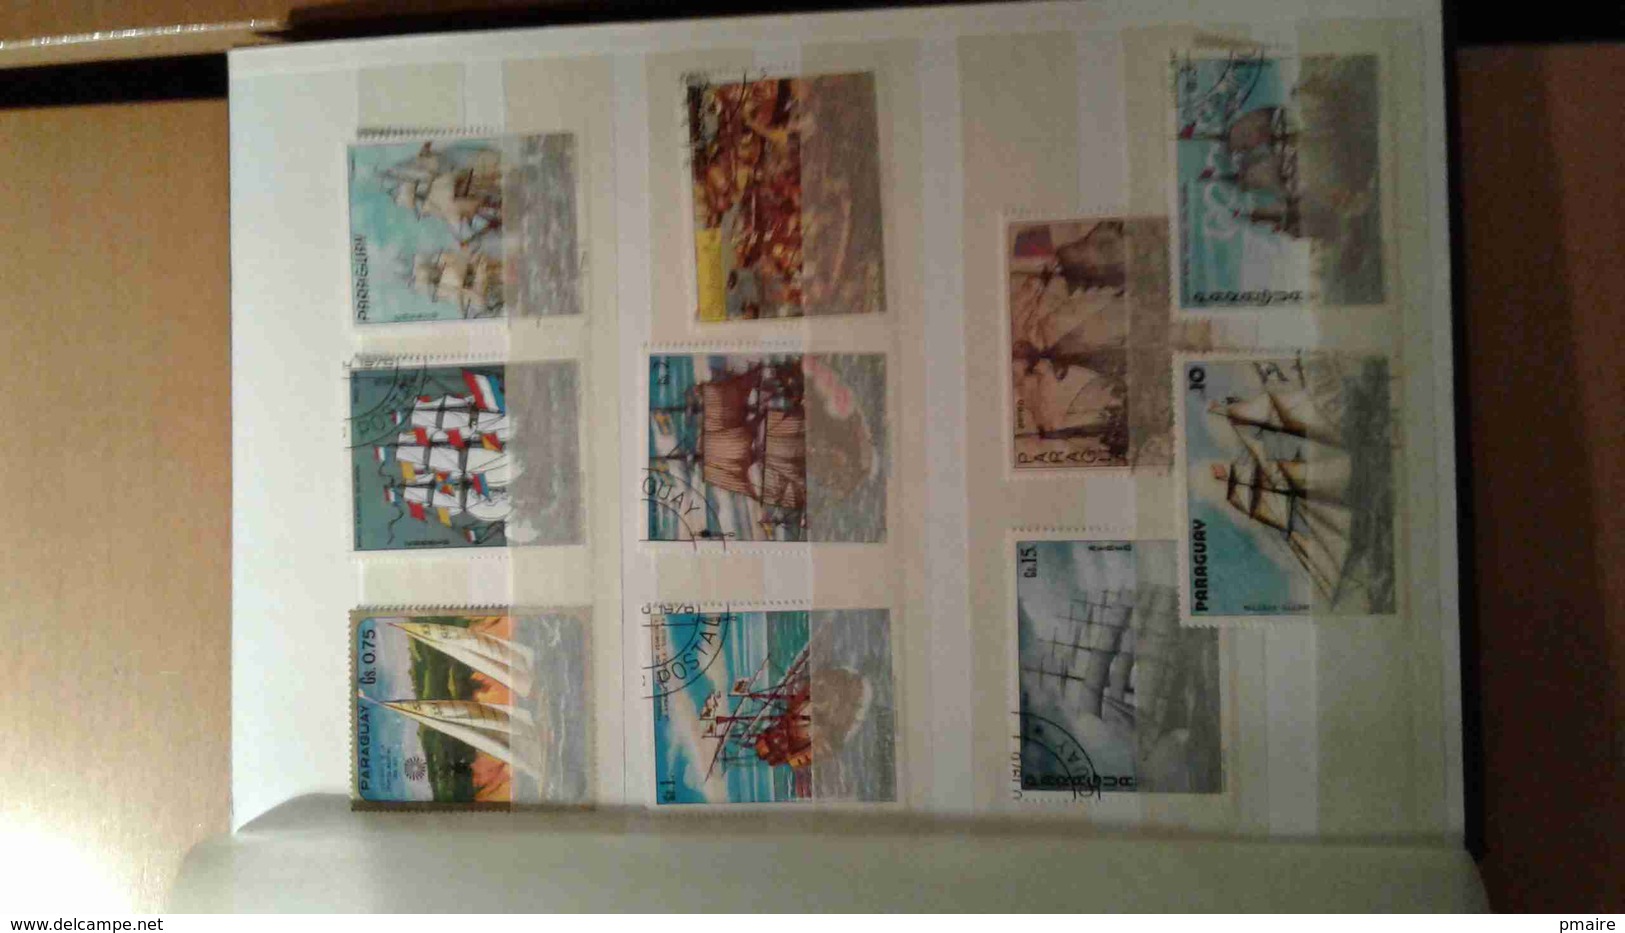 Petit album 16 pages plein de timbres theme Arts Tableaux, quelques bateaux, Napoleon ...